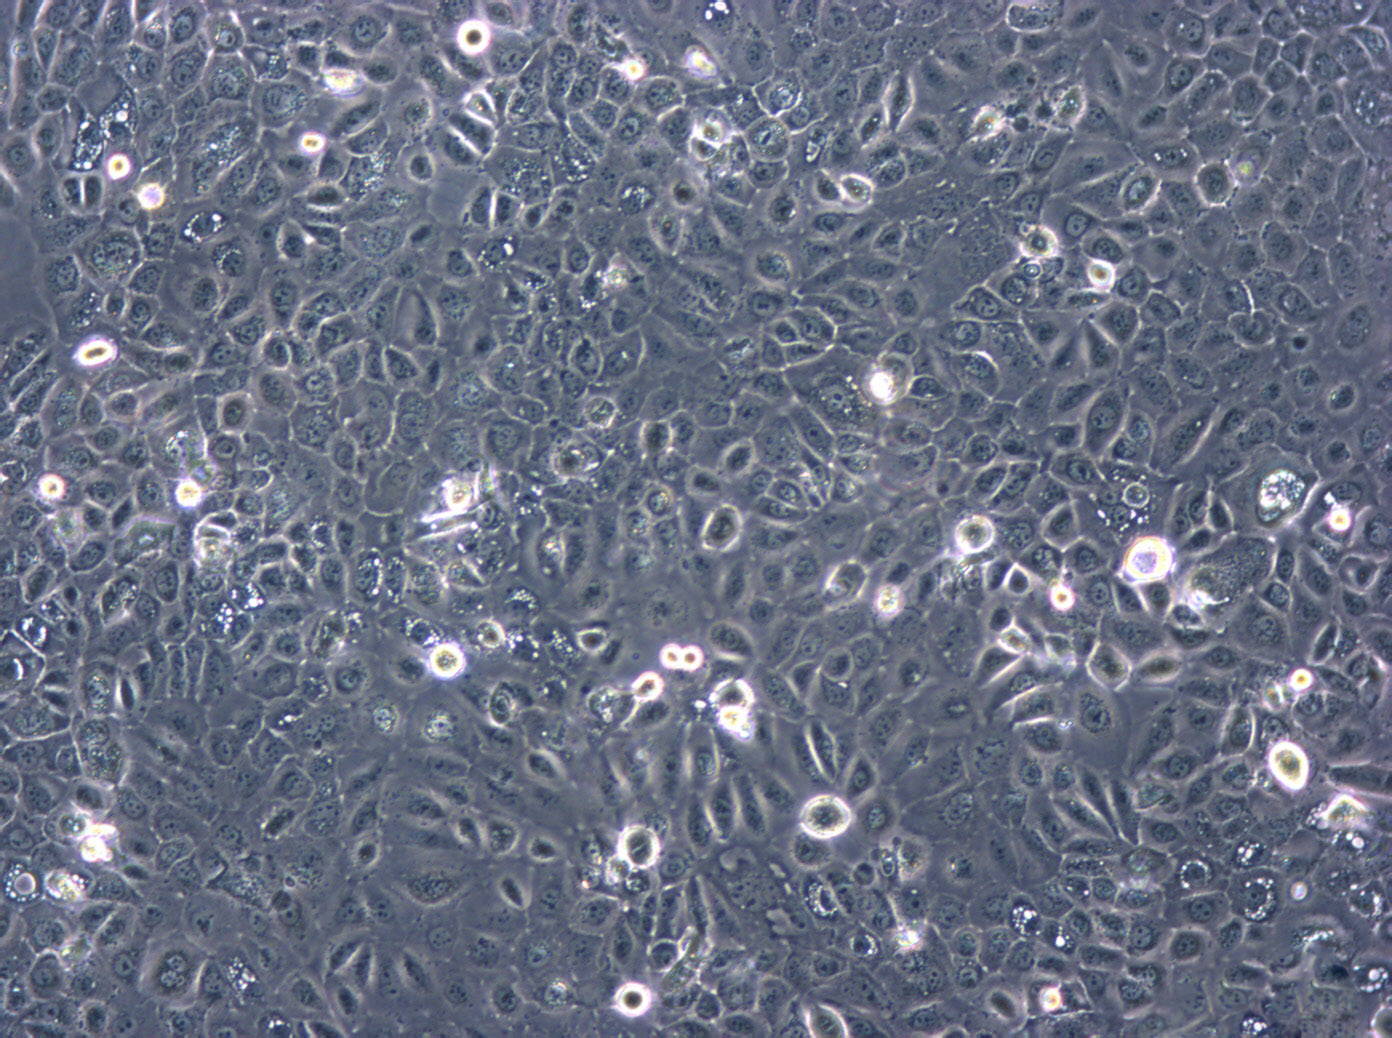 SNU-484 Cells|人胃癌可传代细胞系